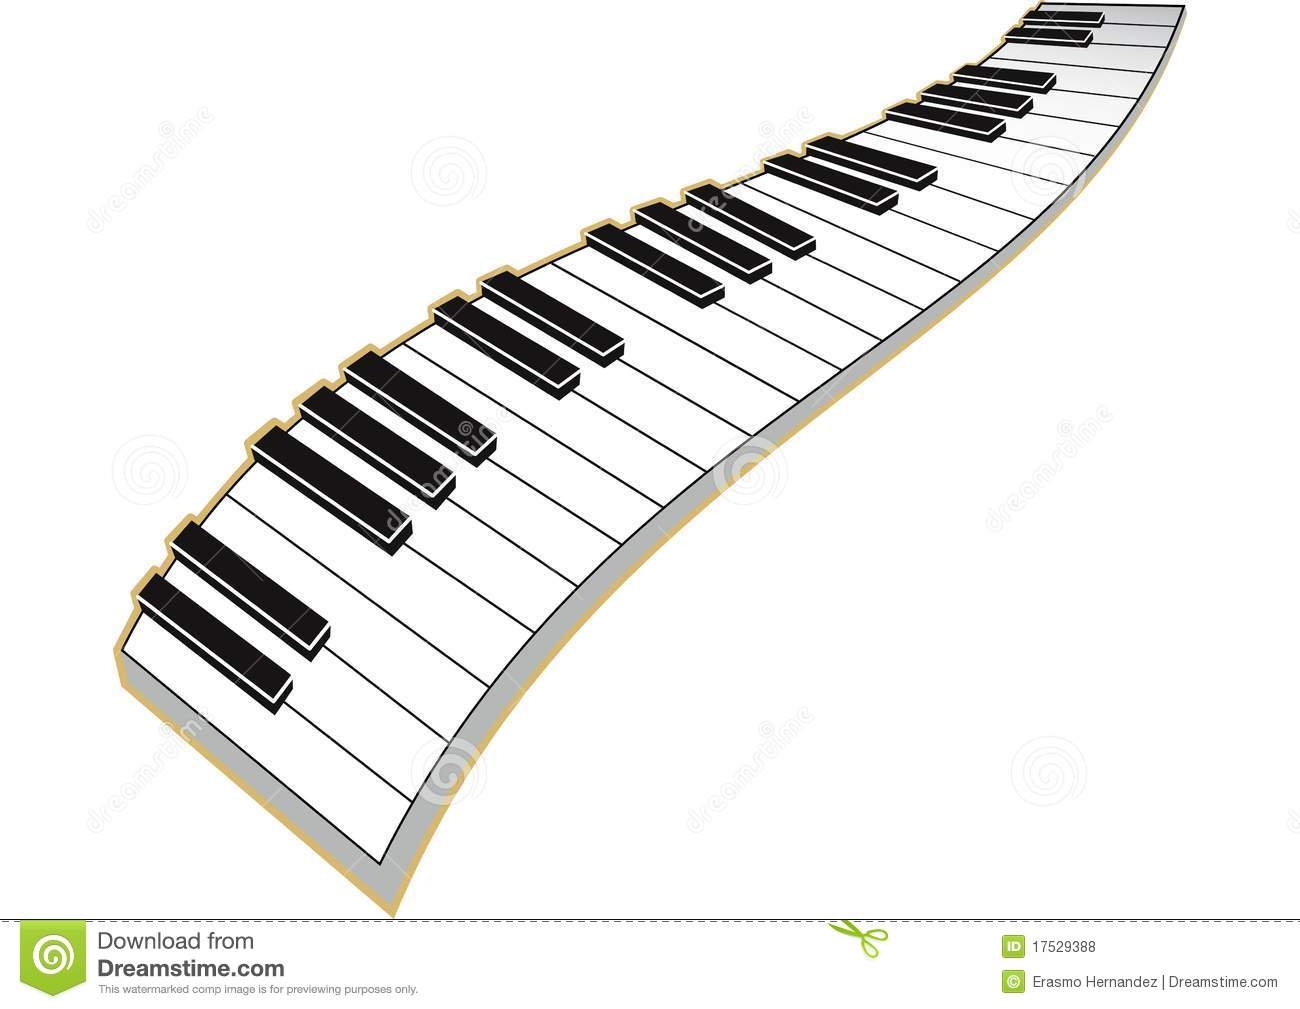 Piano keys clipart Beautiful Piano clipart wavy Pencil and